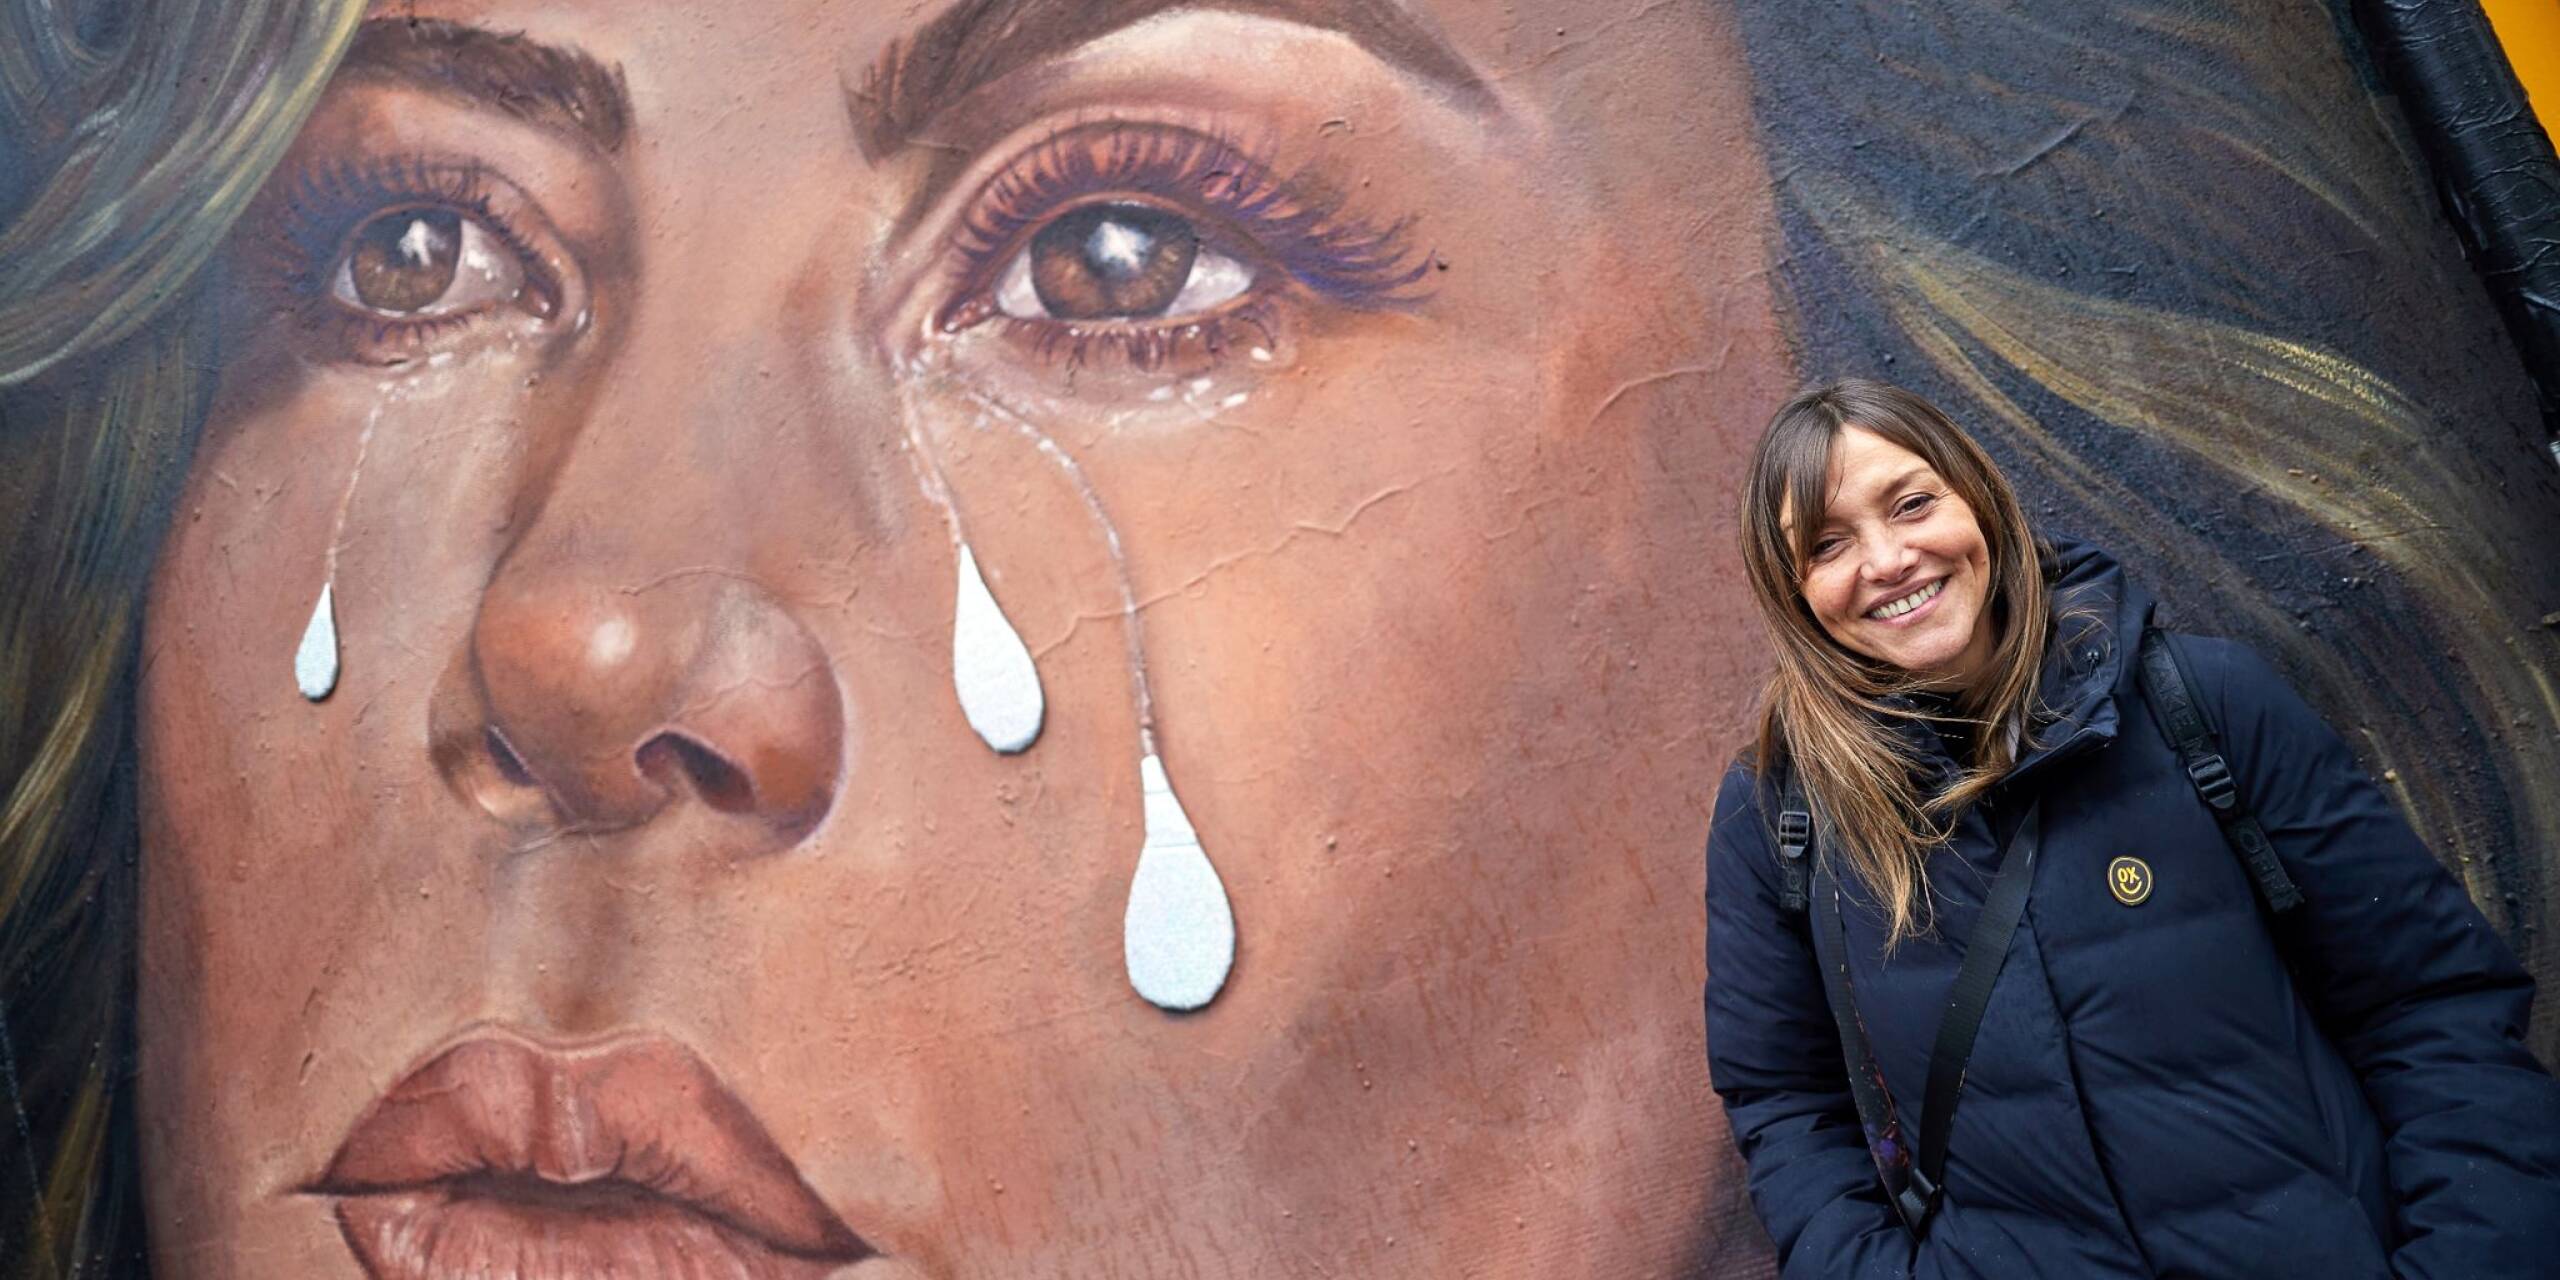 Wenn aus Weinen strahlendes Lachen wird: Caro Pepe, argentinische Streetart-Künstlerin, präsentiert ihr Wandbild am Berliner Mauerpark. Die Inspiration: Das Cover des neuen Albums der Sängerin Shakiro «Las Mujeres Ya No Lloran» - Die Frauen weinen nicht mehr.